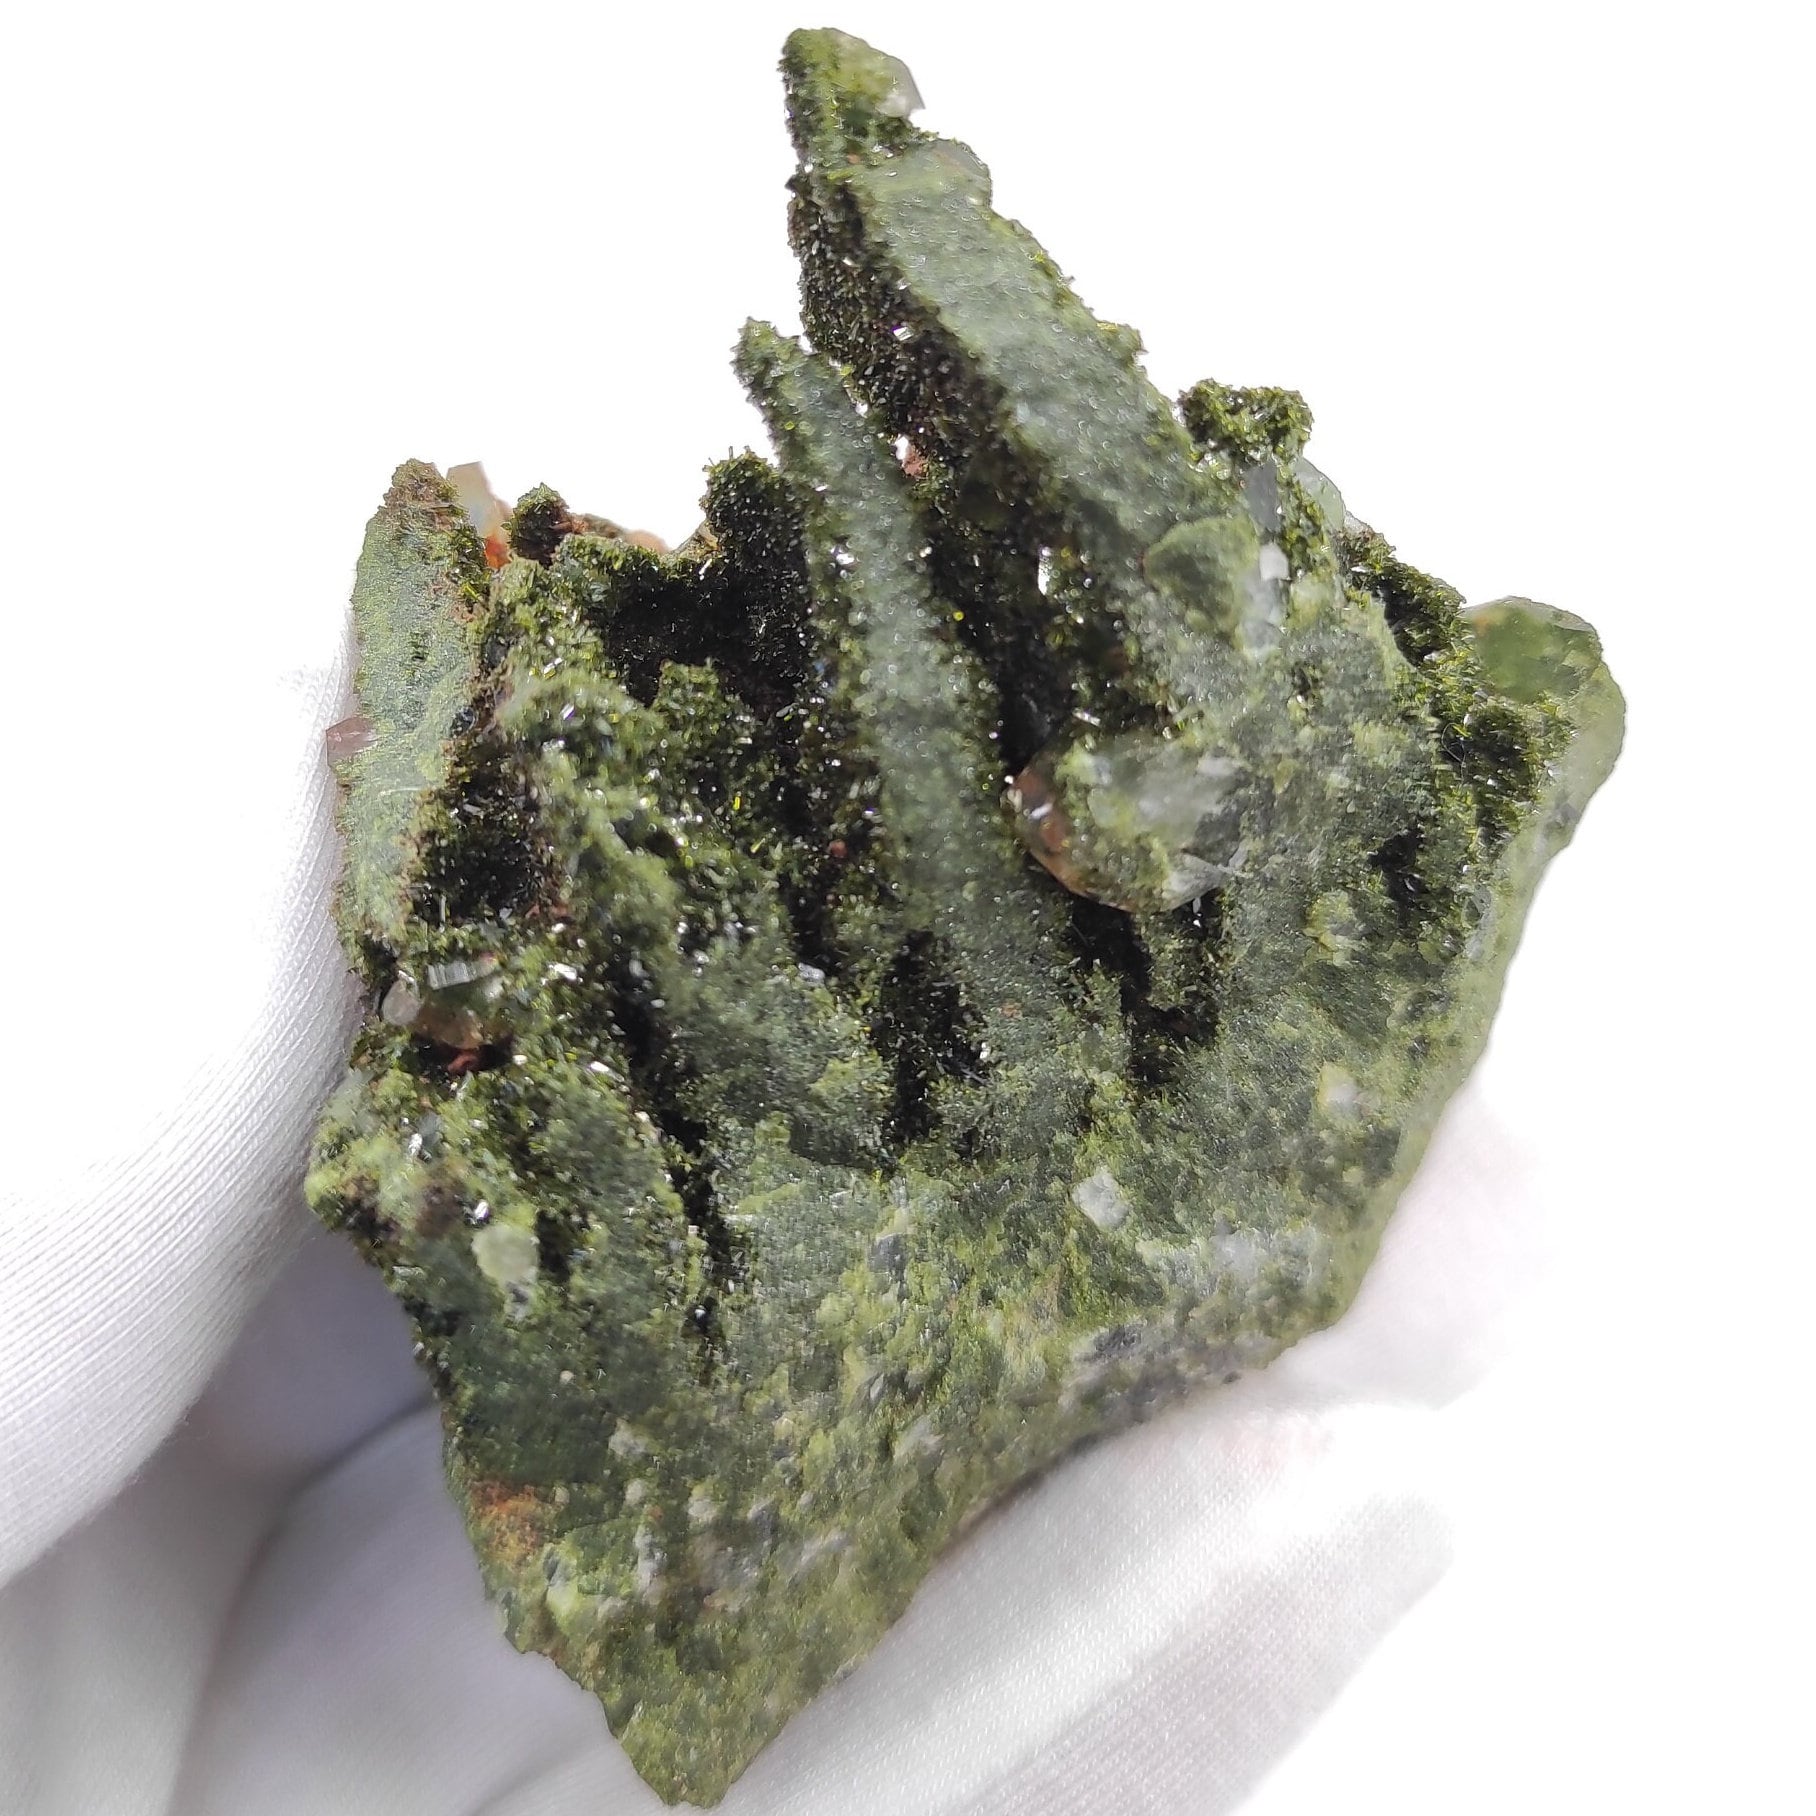 136g Sparkly Epidote & Forest Quartz - Hakkari, Turkey - Epidote with Clear Quartz - Forest Fairy Quartz - Natural Minerals - Rare Find